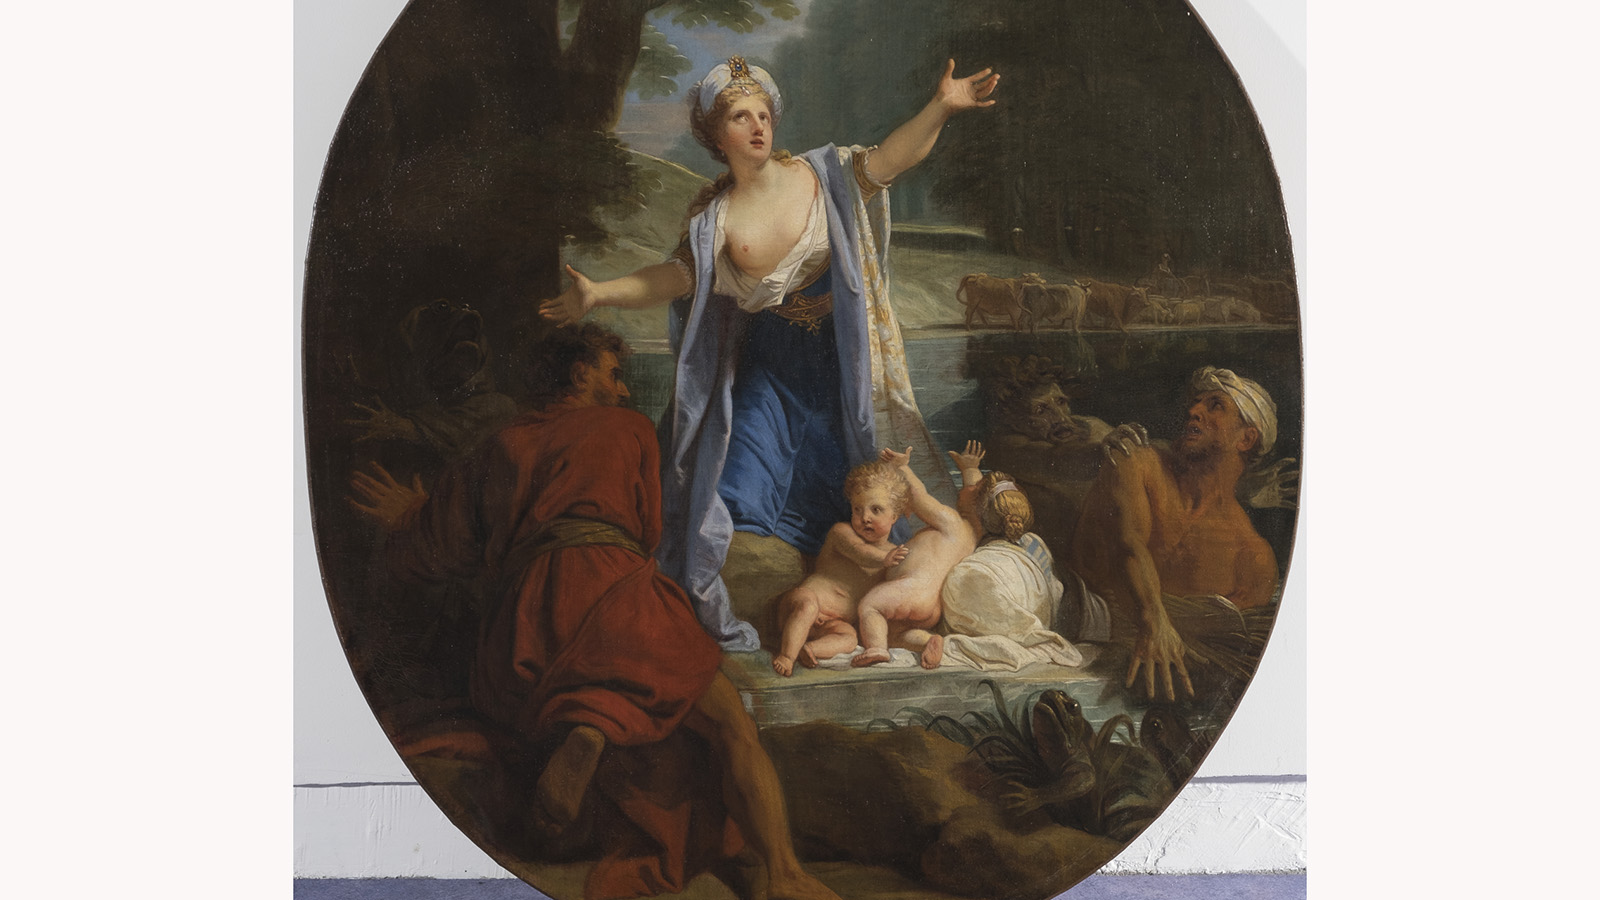 Le Rendez-vous du MUDAAC : focus sur la Vengeance de Latone peint par Jouvenet